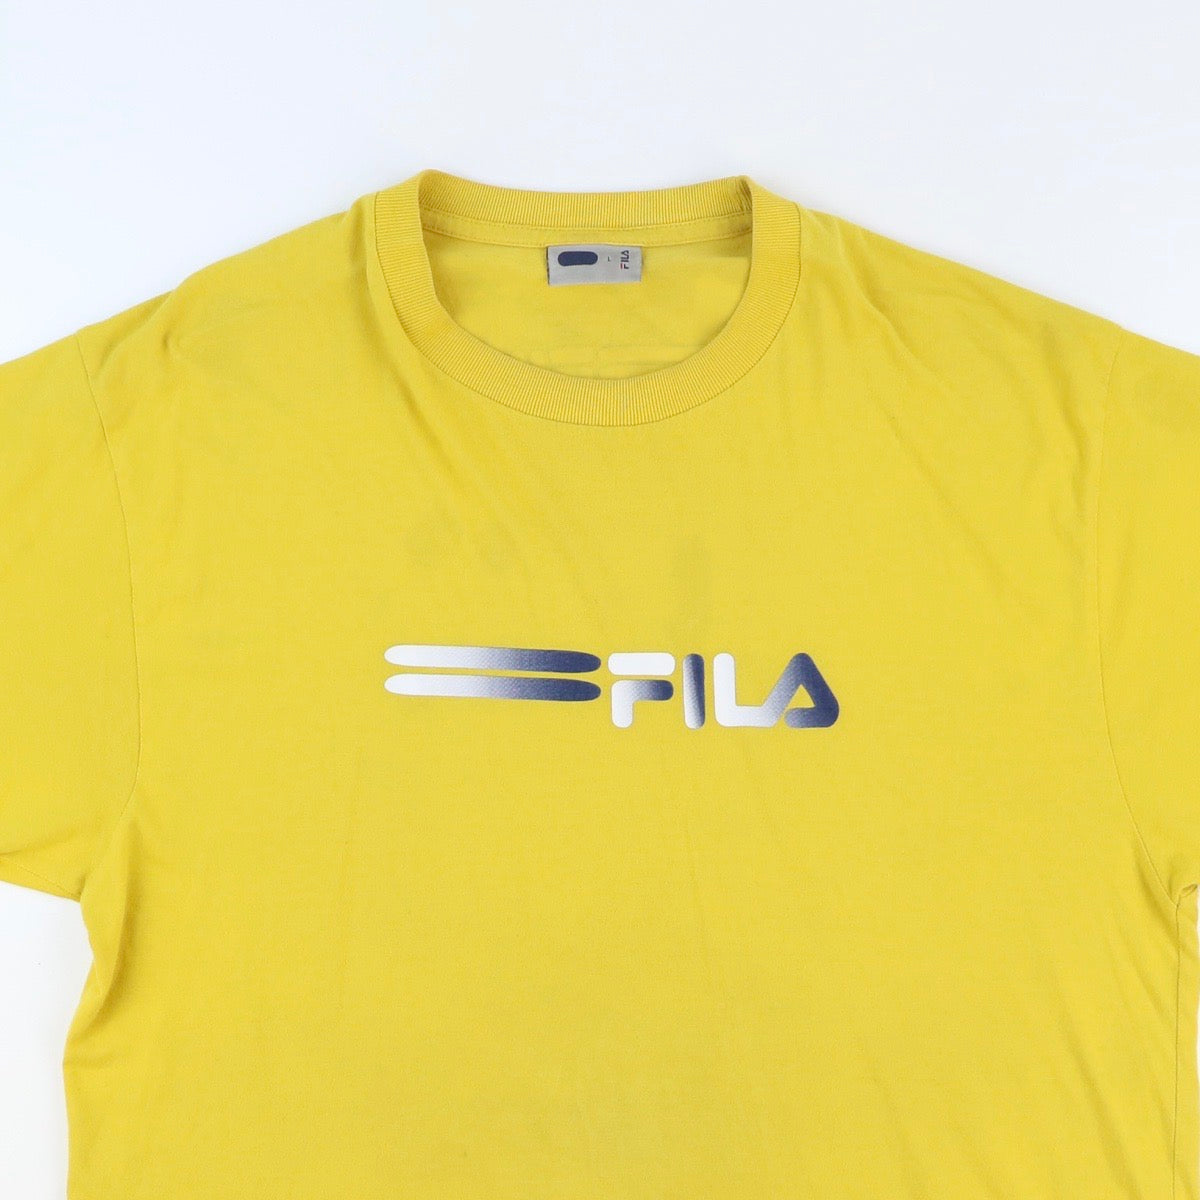 Fila T shirt (L)